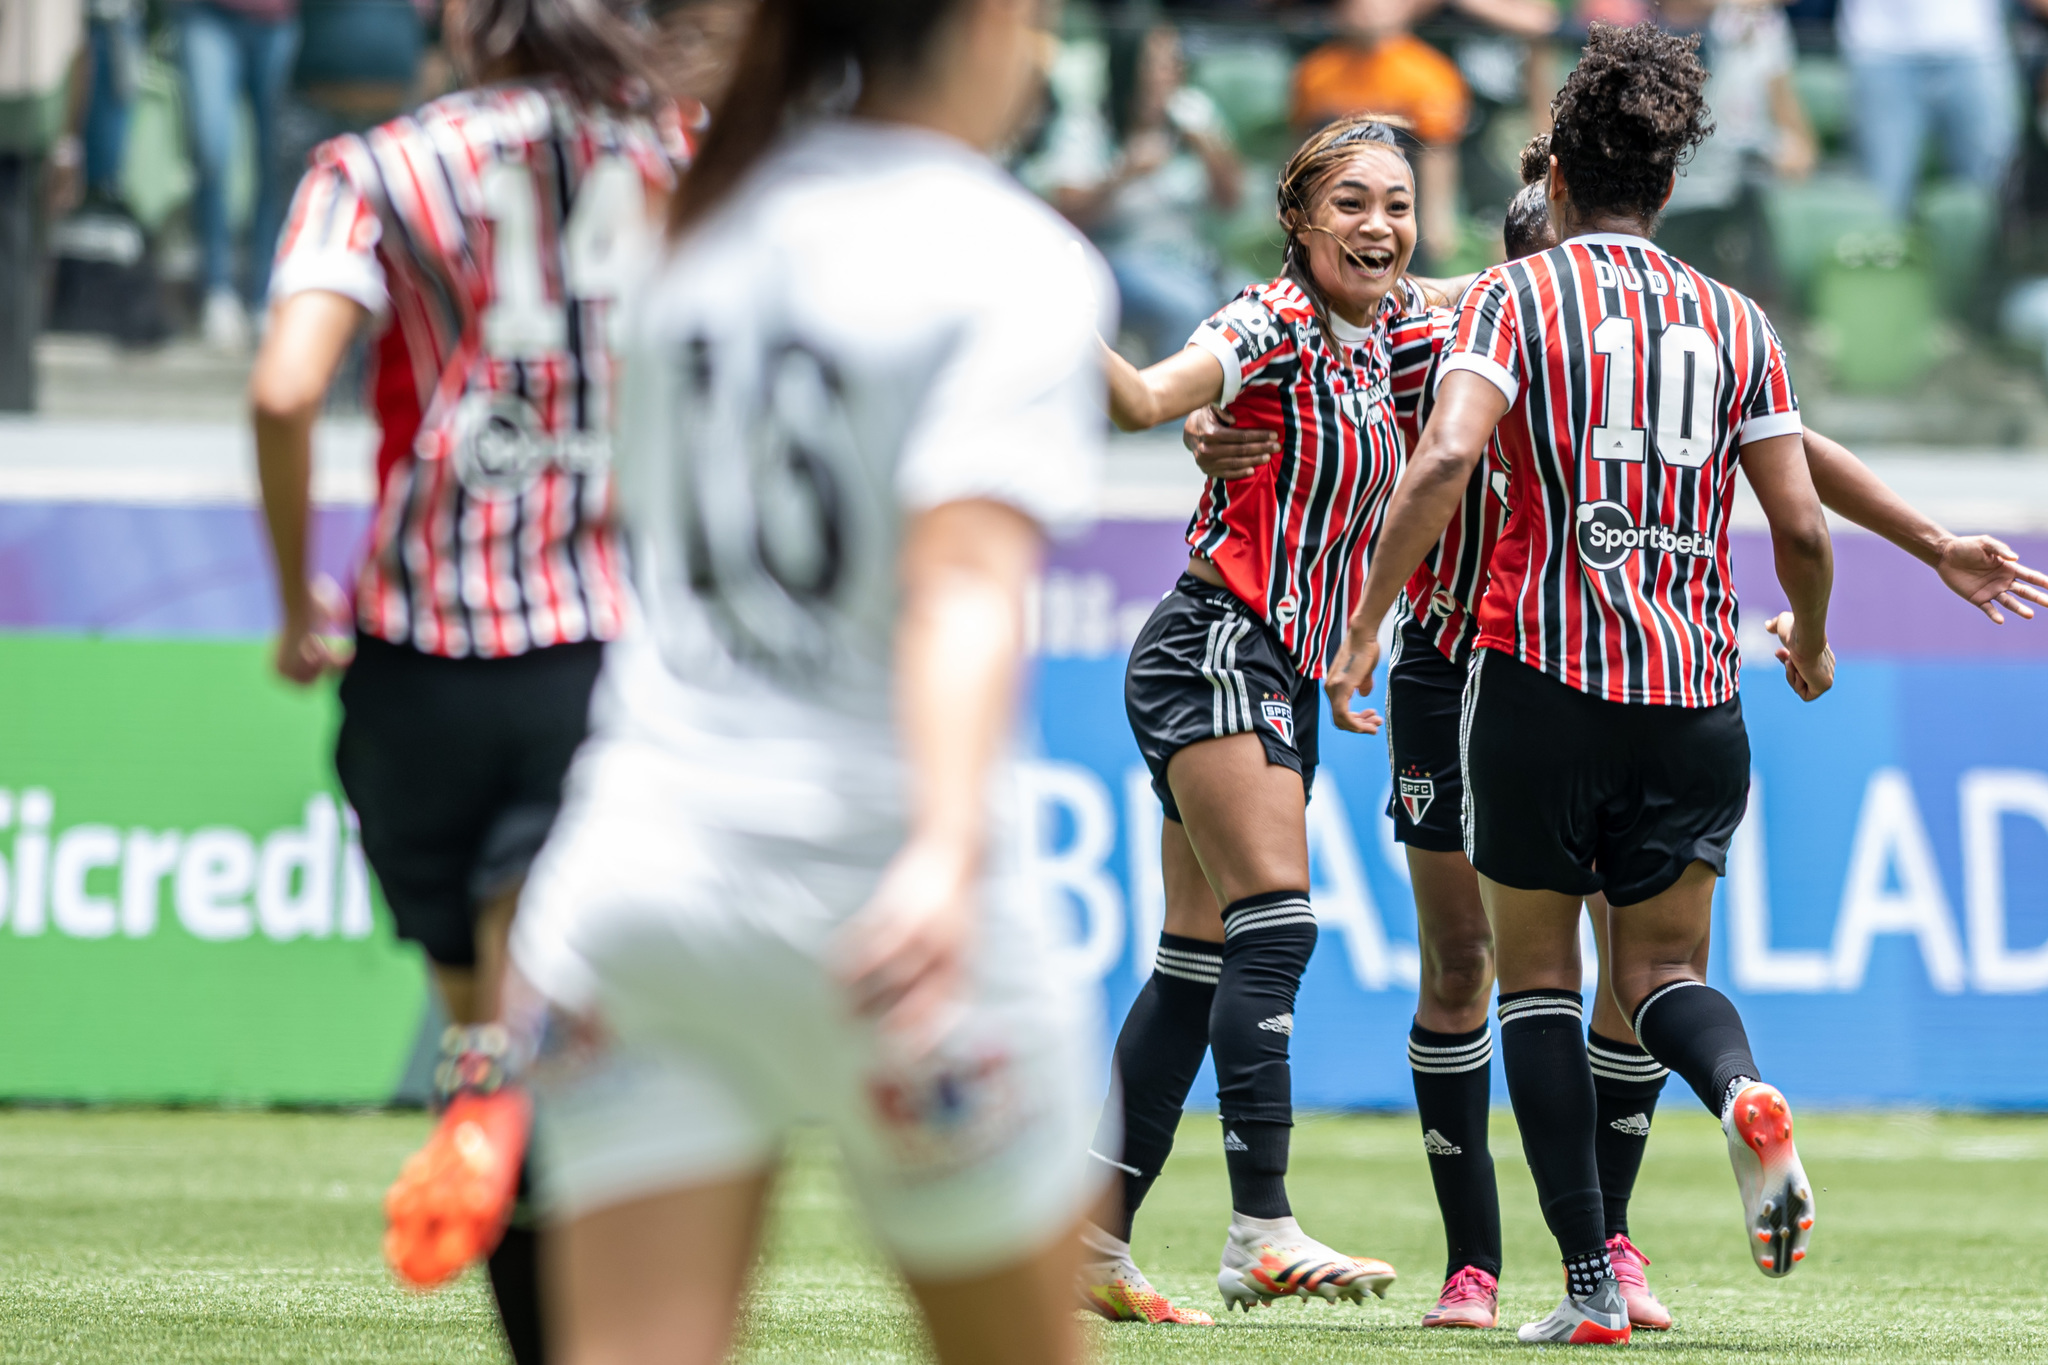 Santos vence, e São Paulo se despede de Campeonato Paulista Feminino -  ISTOÉ Independente